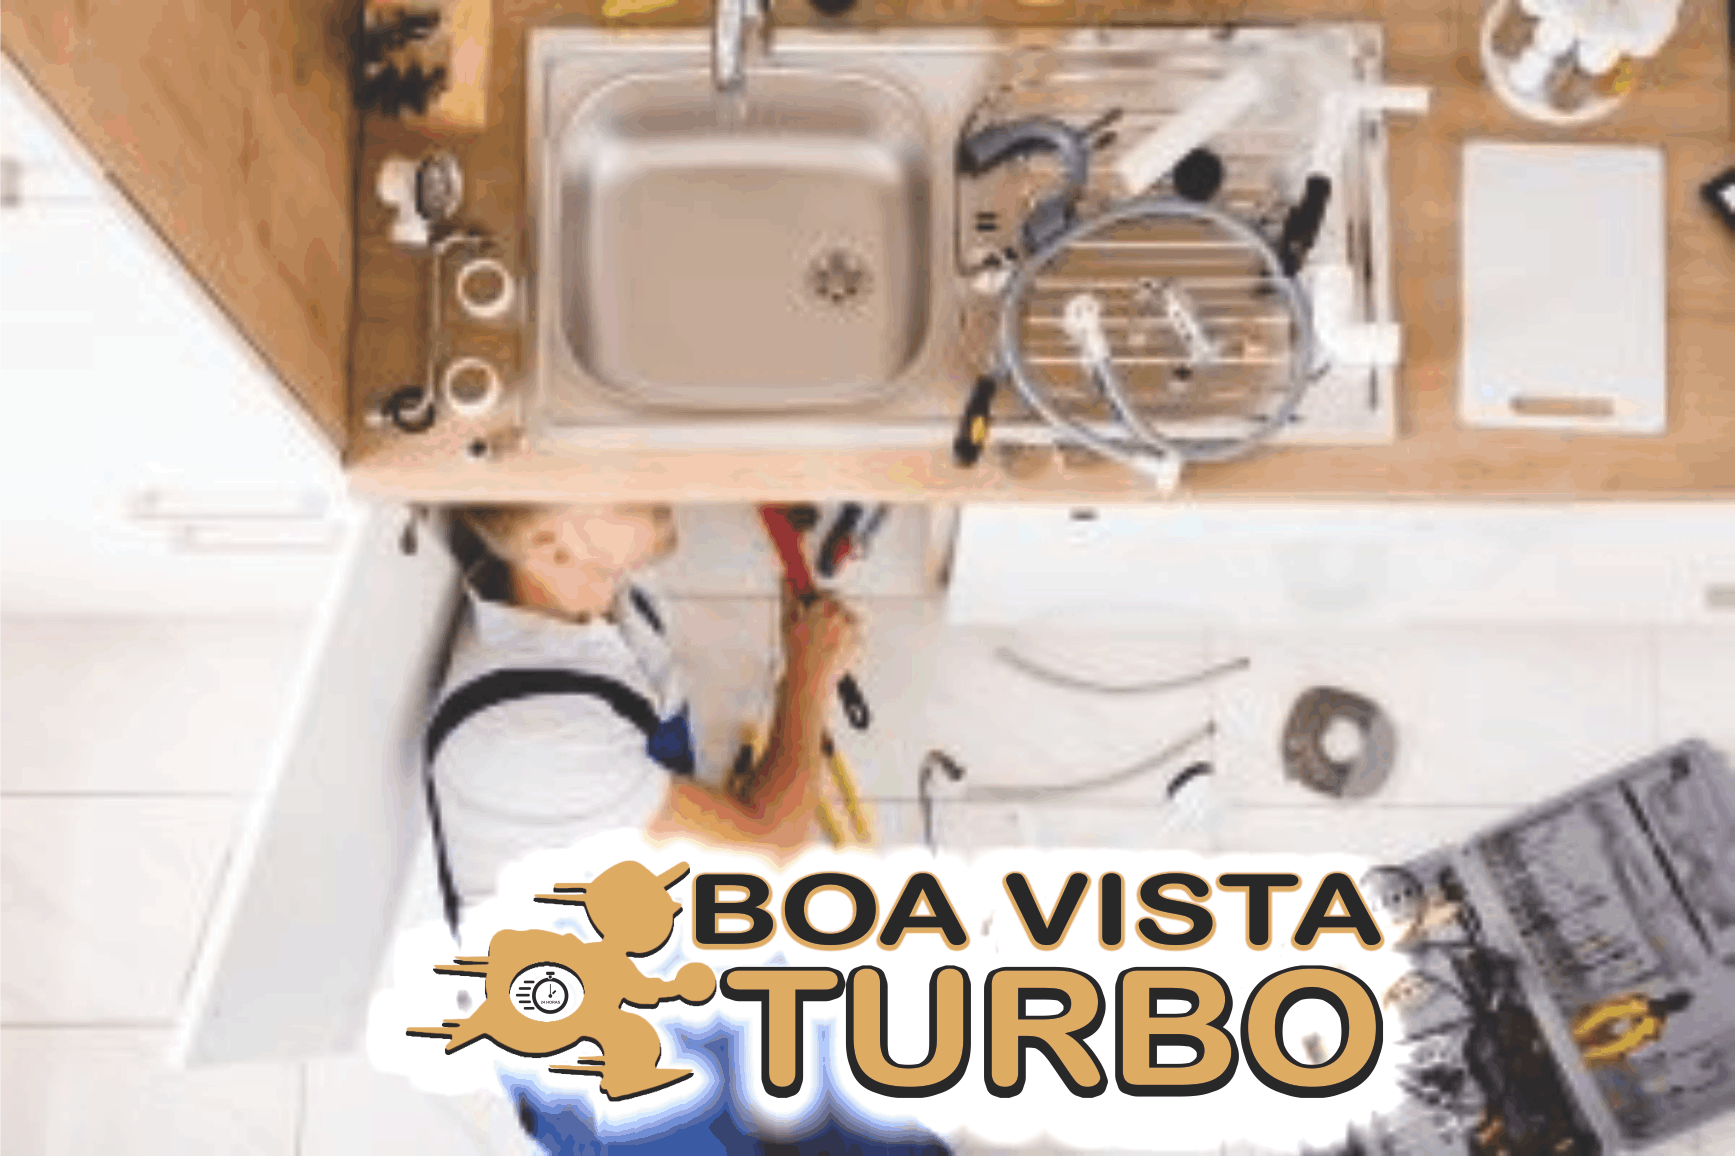 Boa Vista Turbo Desentupimentos em Geral      Fones: (41) 3357-3929 / (41) 99707-9550